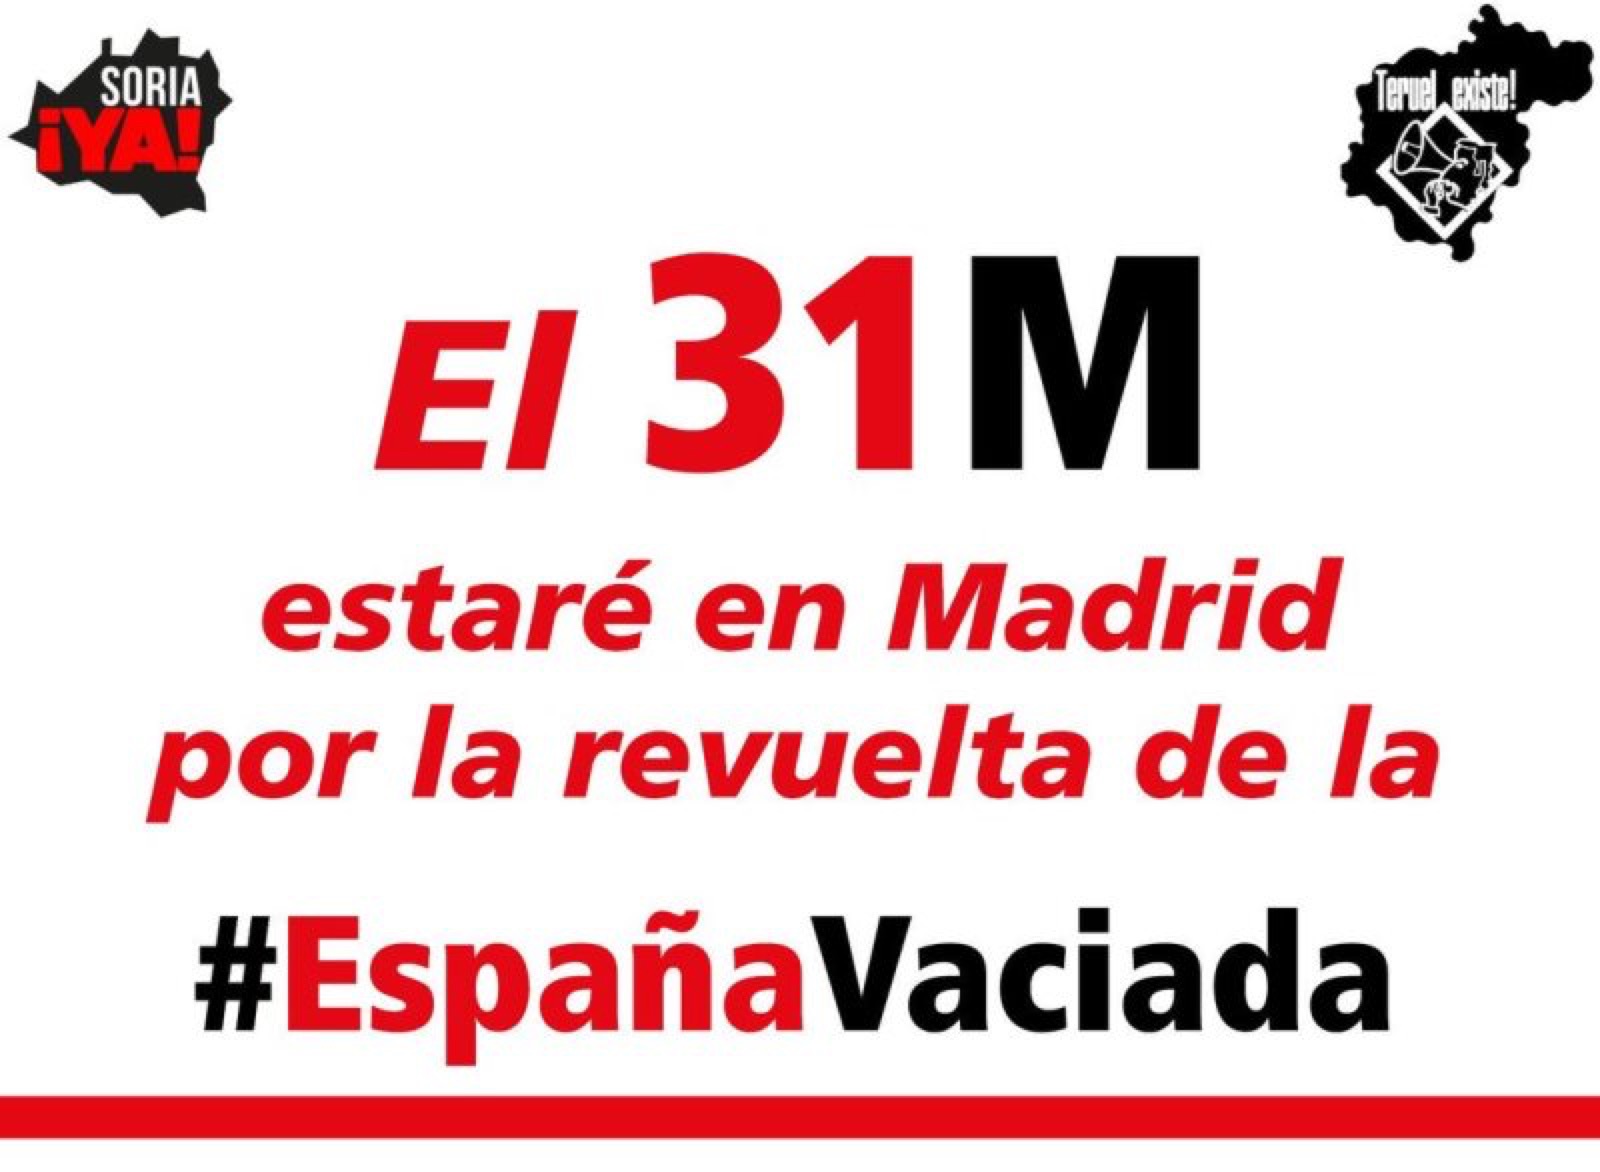 La Cámara apoyará con autobuses gratuitos la manifestación de “Soria Ya” en Madrid